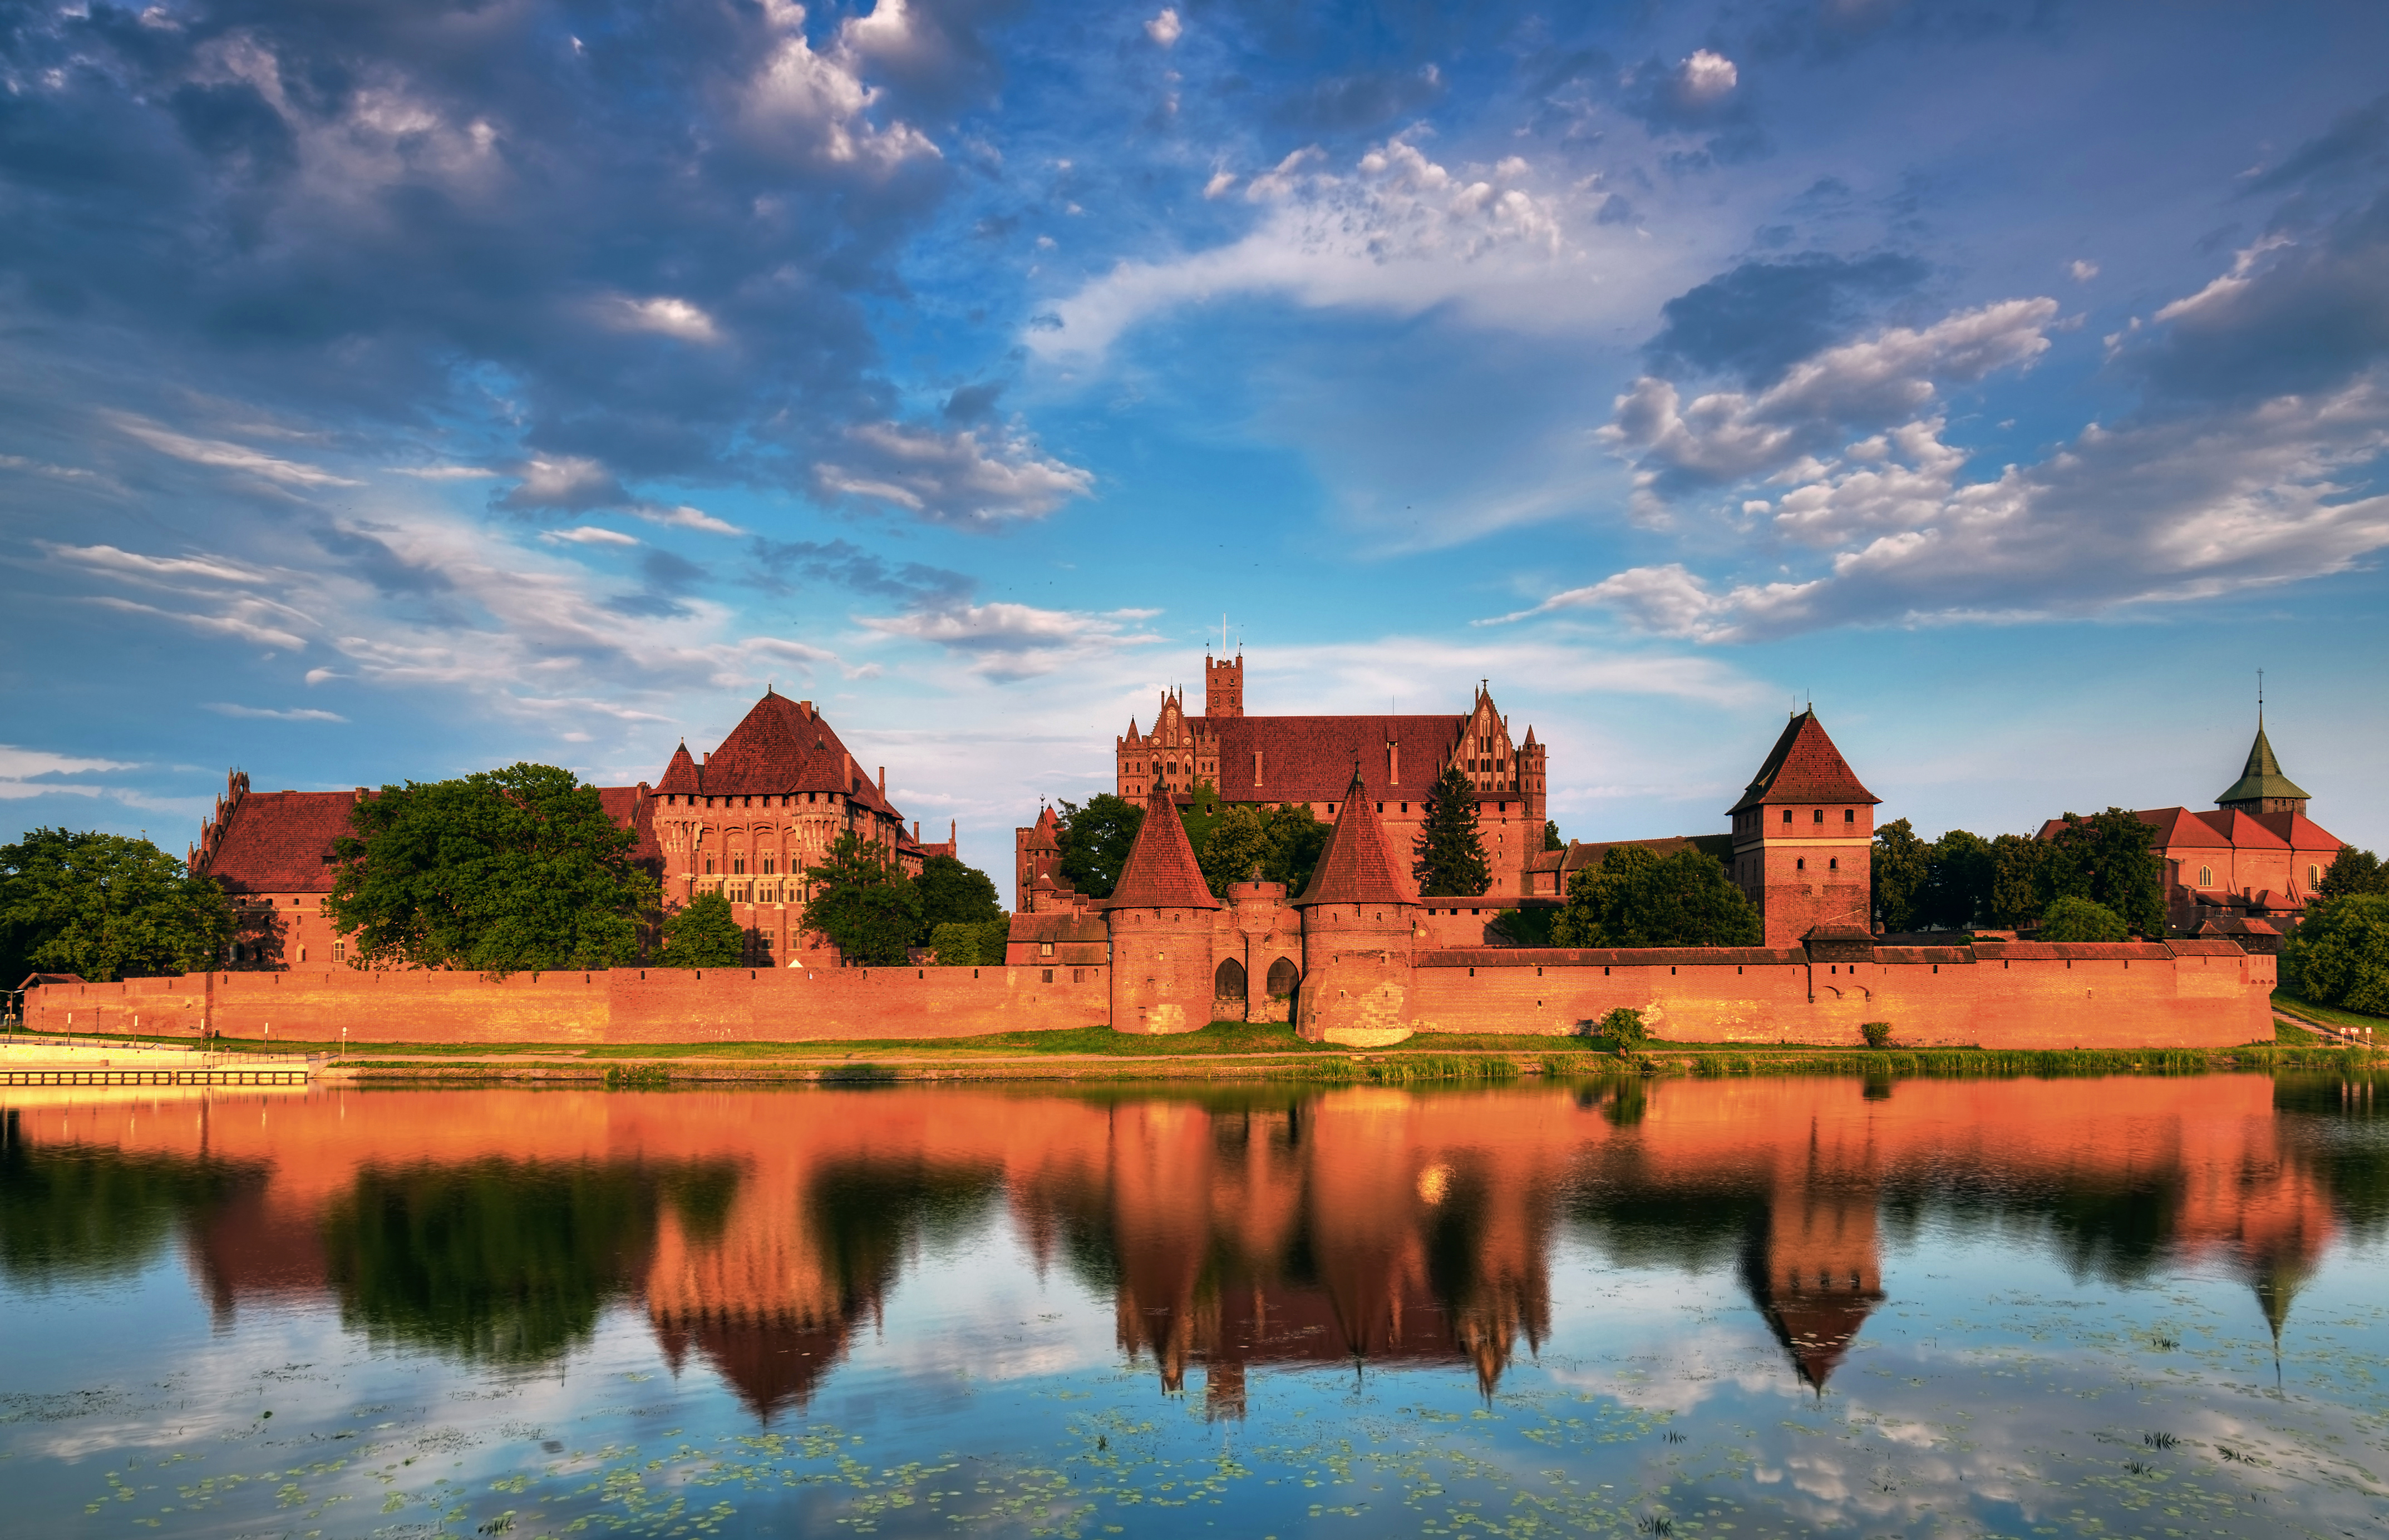 Marienburg erstreckt sich über 52 Hektar und ist viermal so groß wie Windsor Castle, das 13 Hektar groß ist